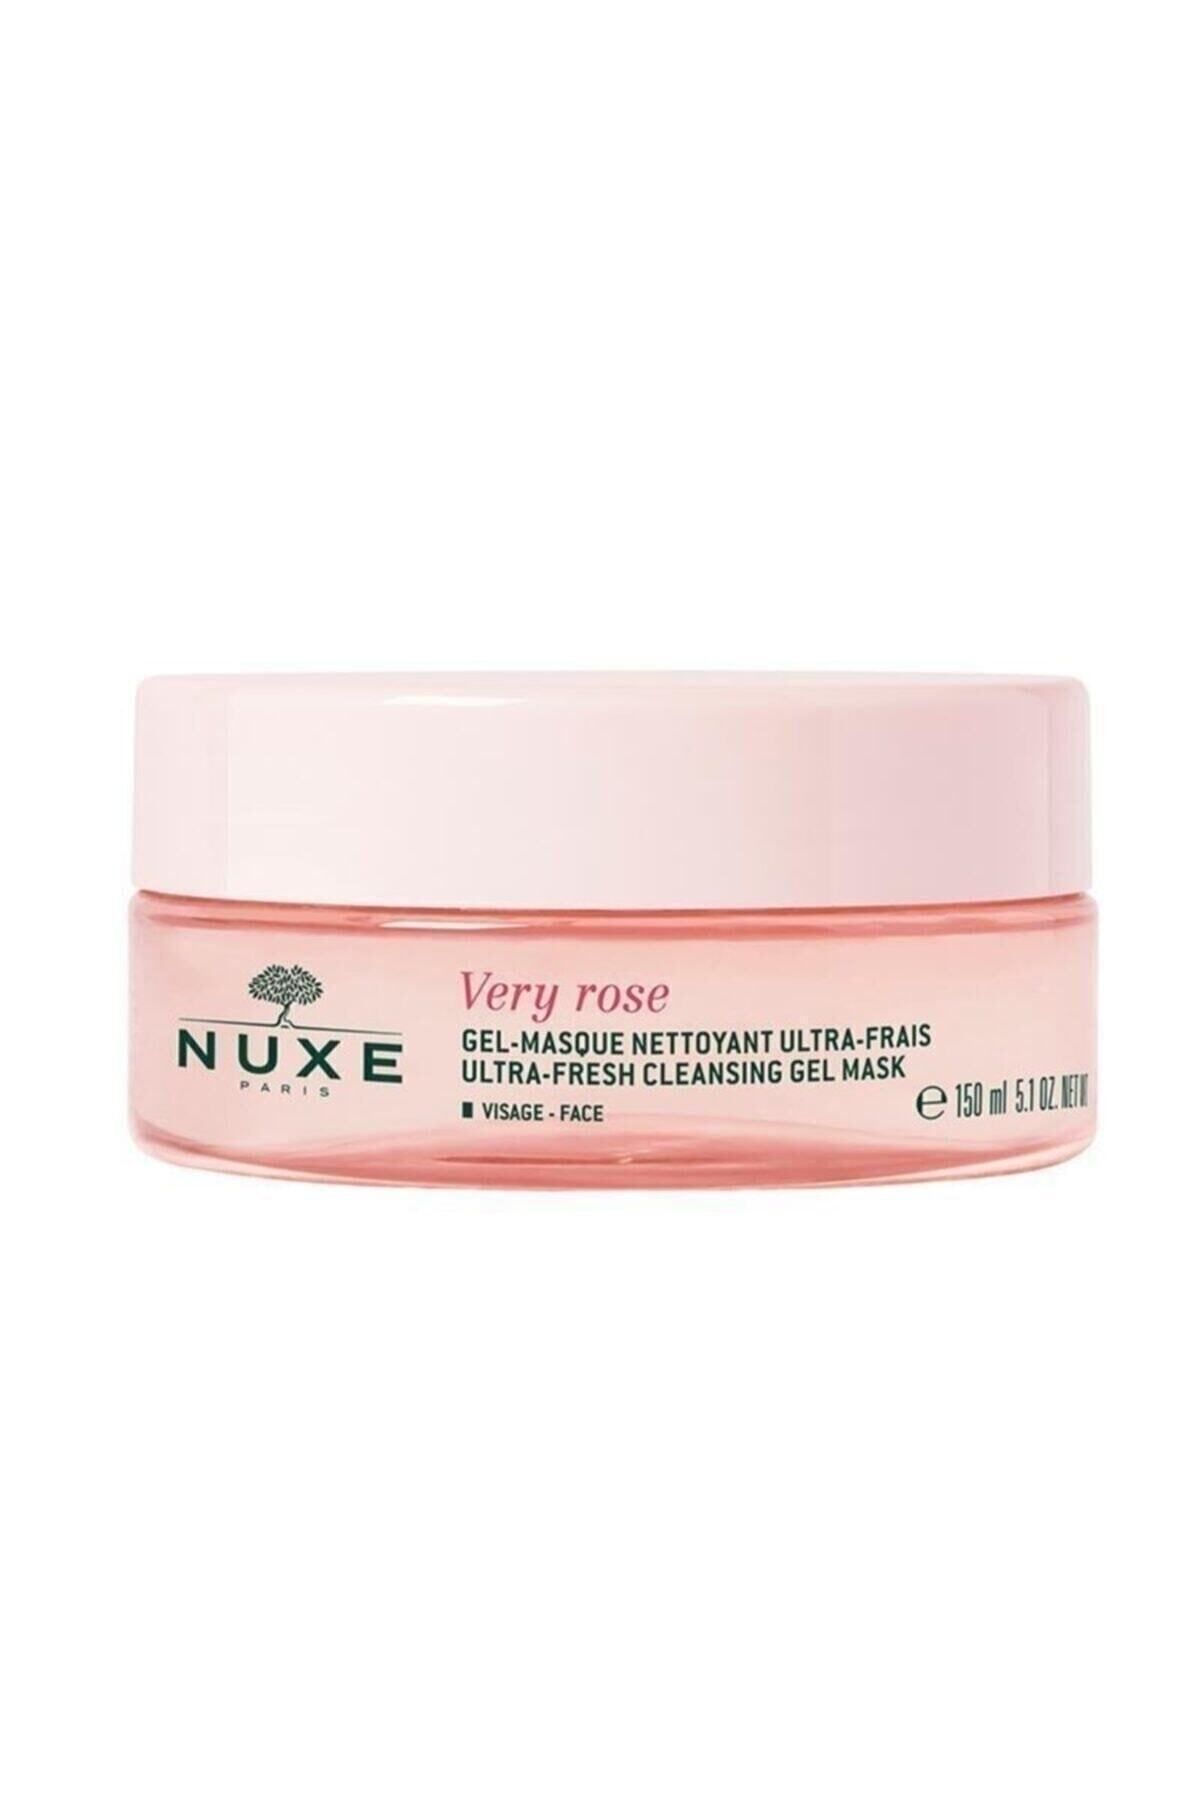 Nuxe ماسک ژل روشن کننده پوست وری رز ویژه برای پوست حساس 150 میلی لیتر